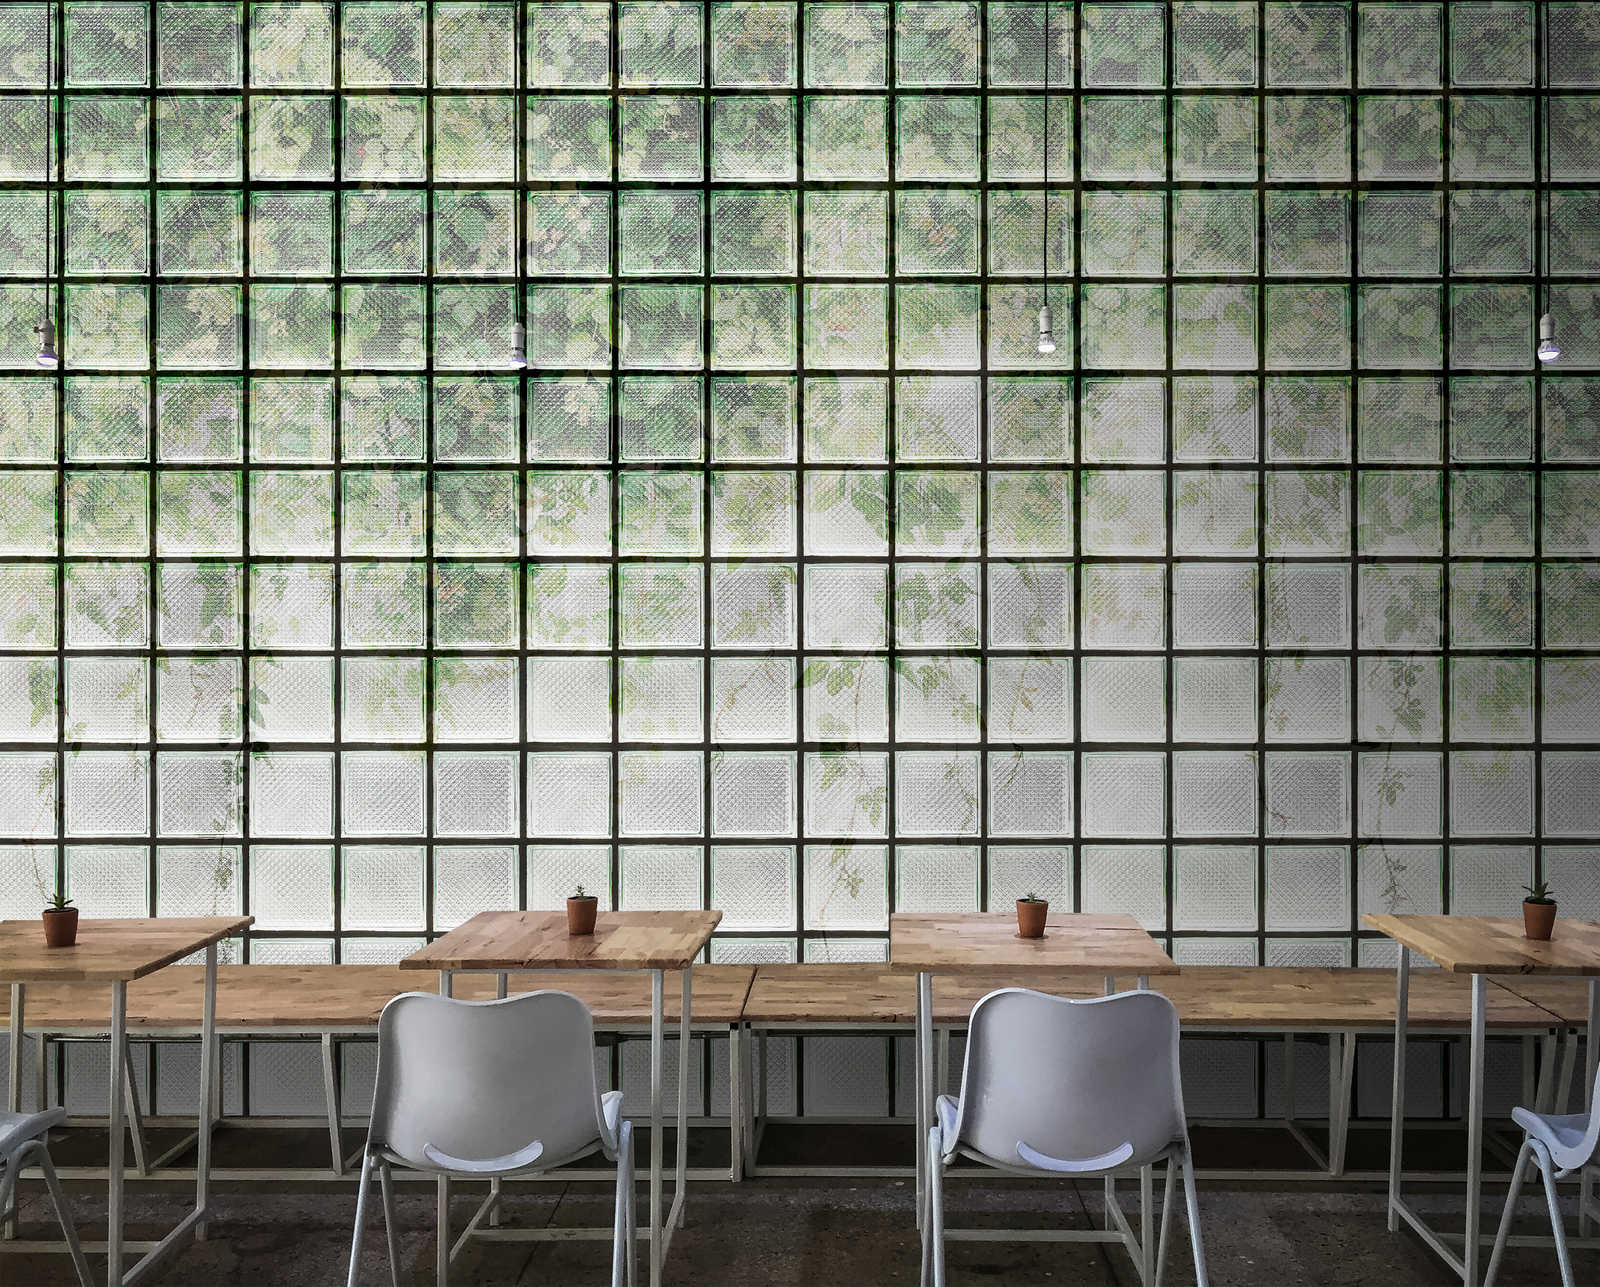             Green House 2 - Papel pintado de invernadero Hojas y ladrillos de vidrio
        